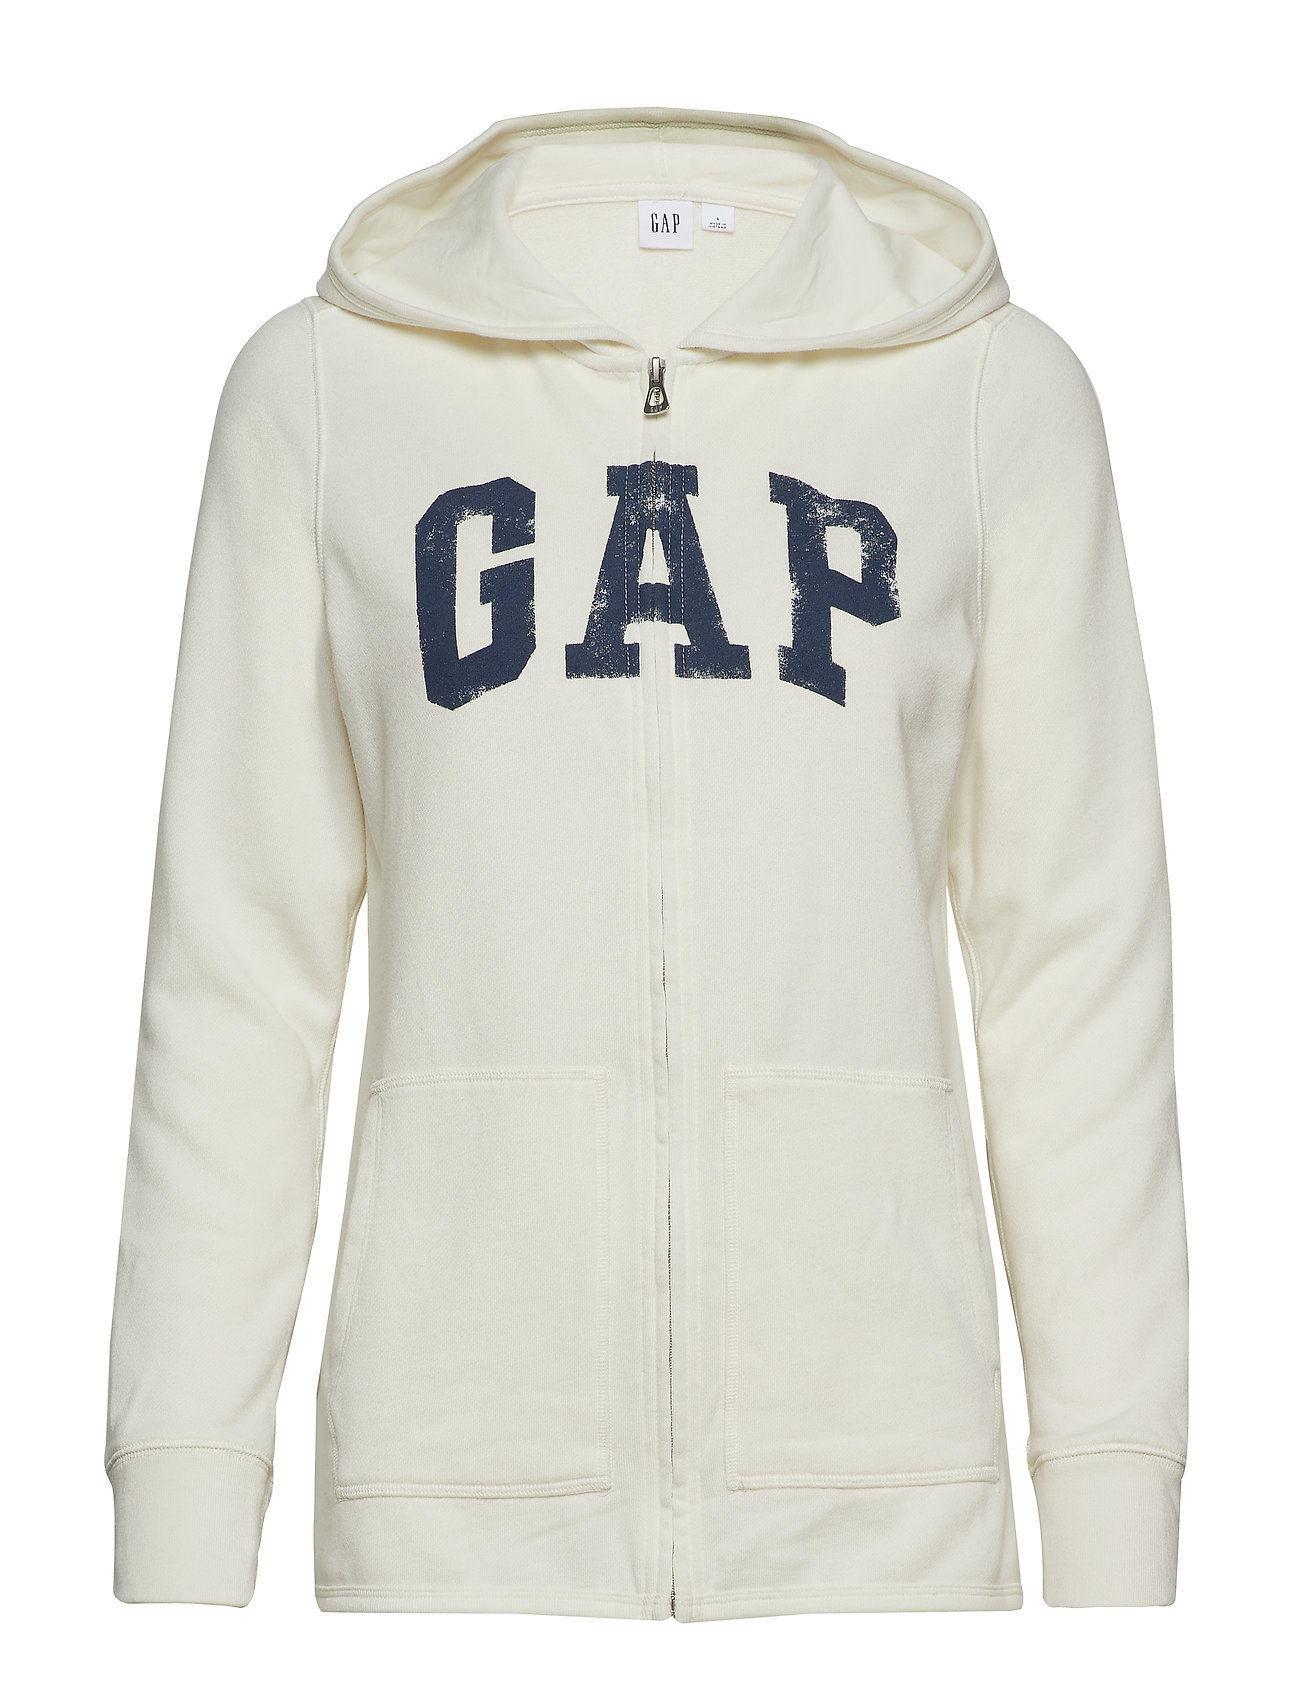 gap vintage soft zip hoodie